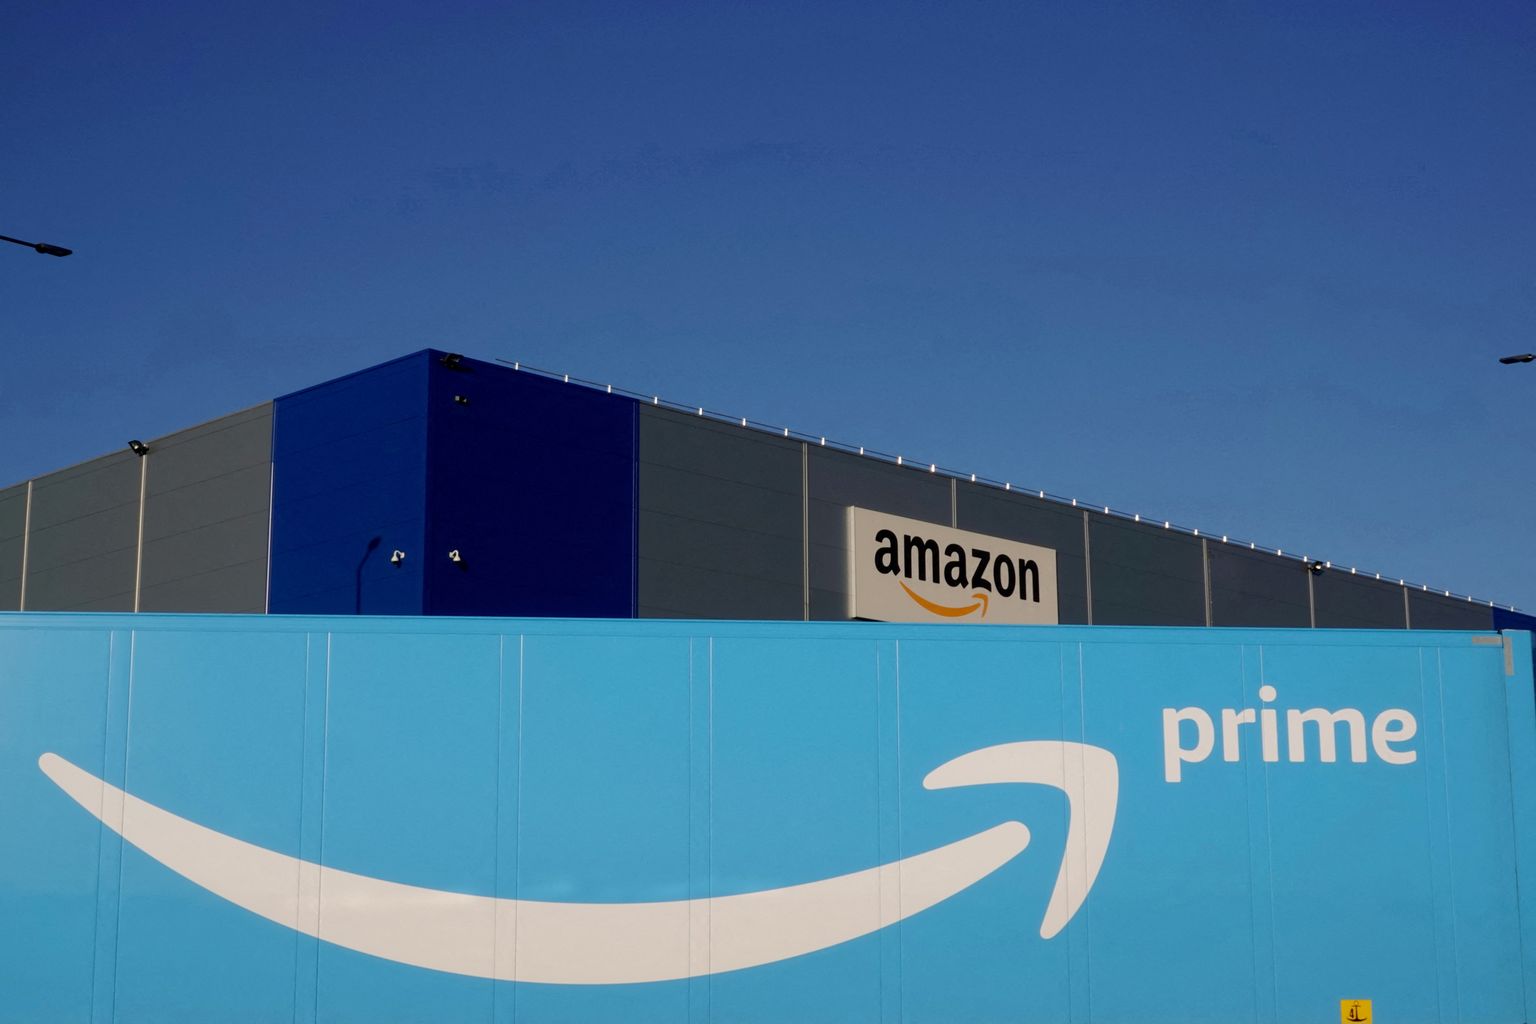 Amazon tõstis USA klientidele Prime teenuse hinda ja prognoosib käibekasvu